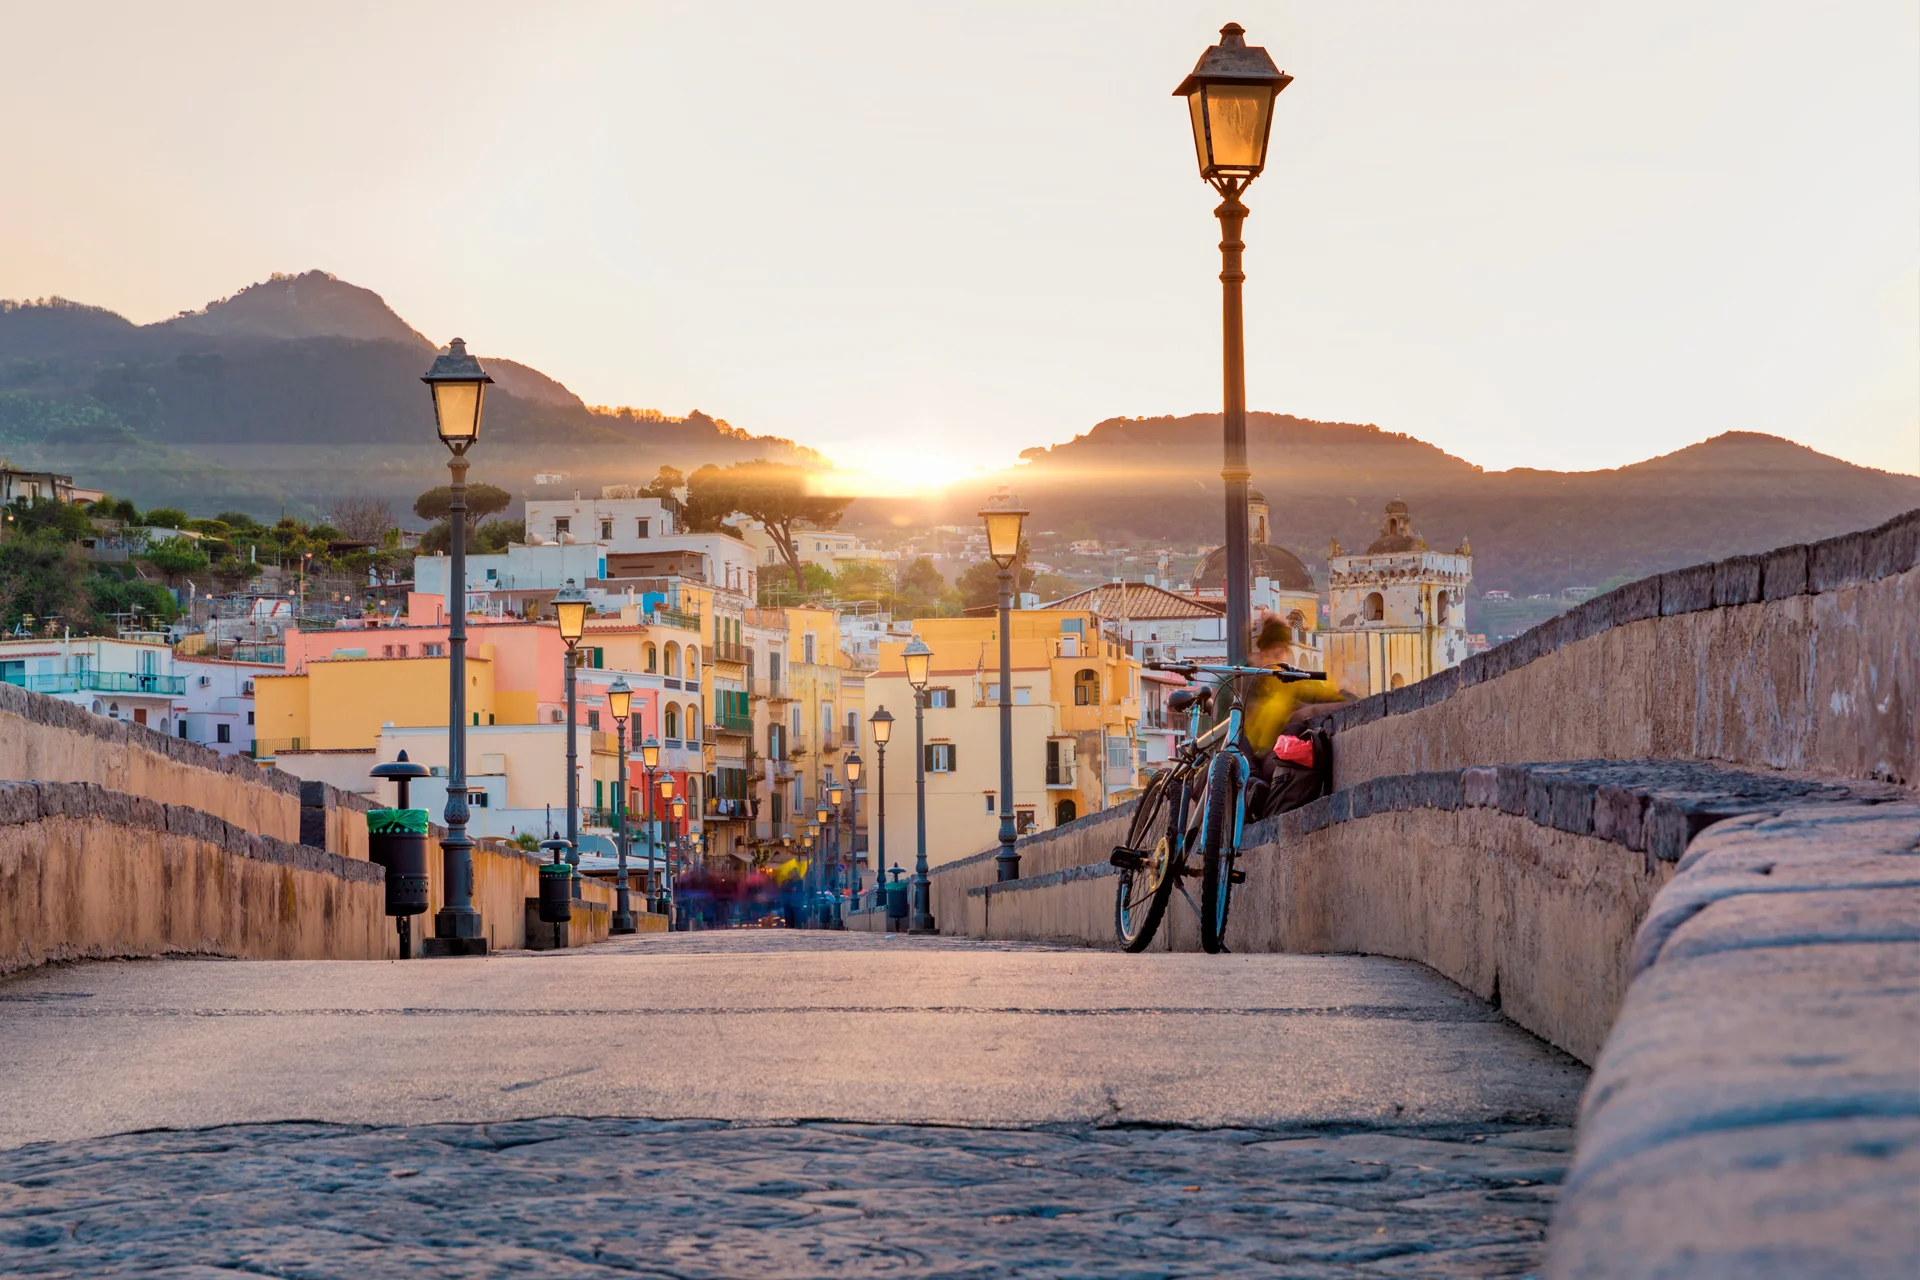 Naples town bridge sunset landscape